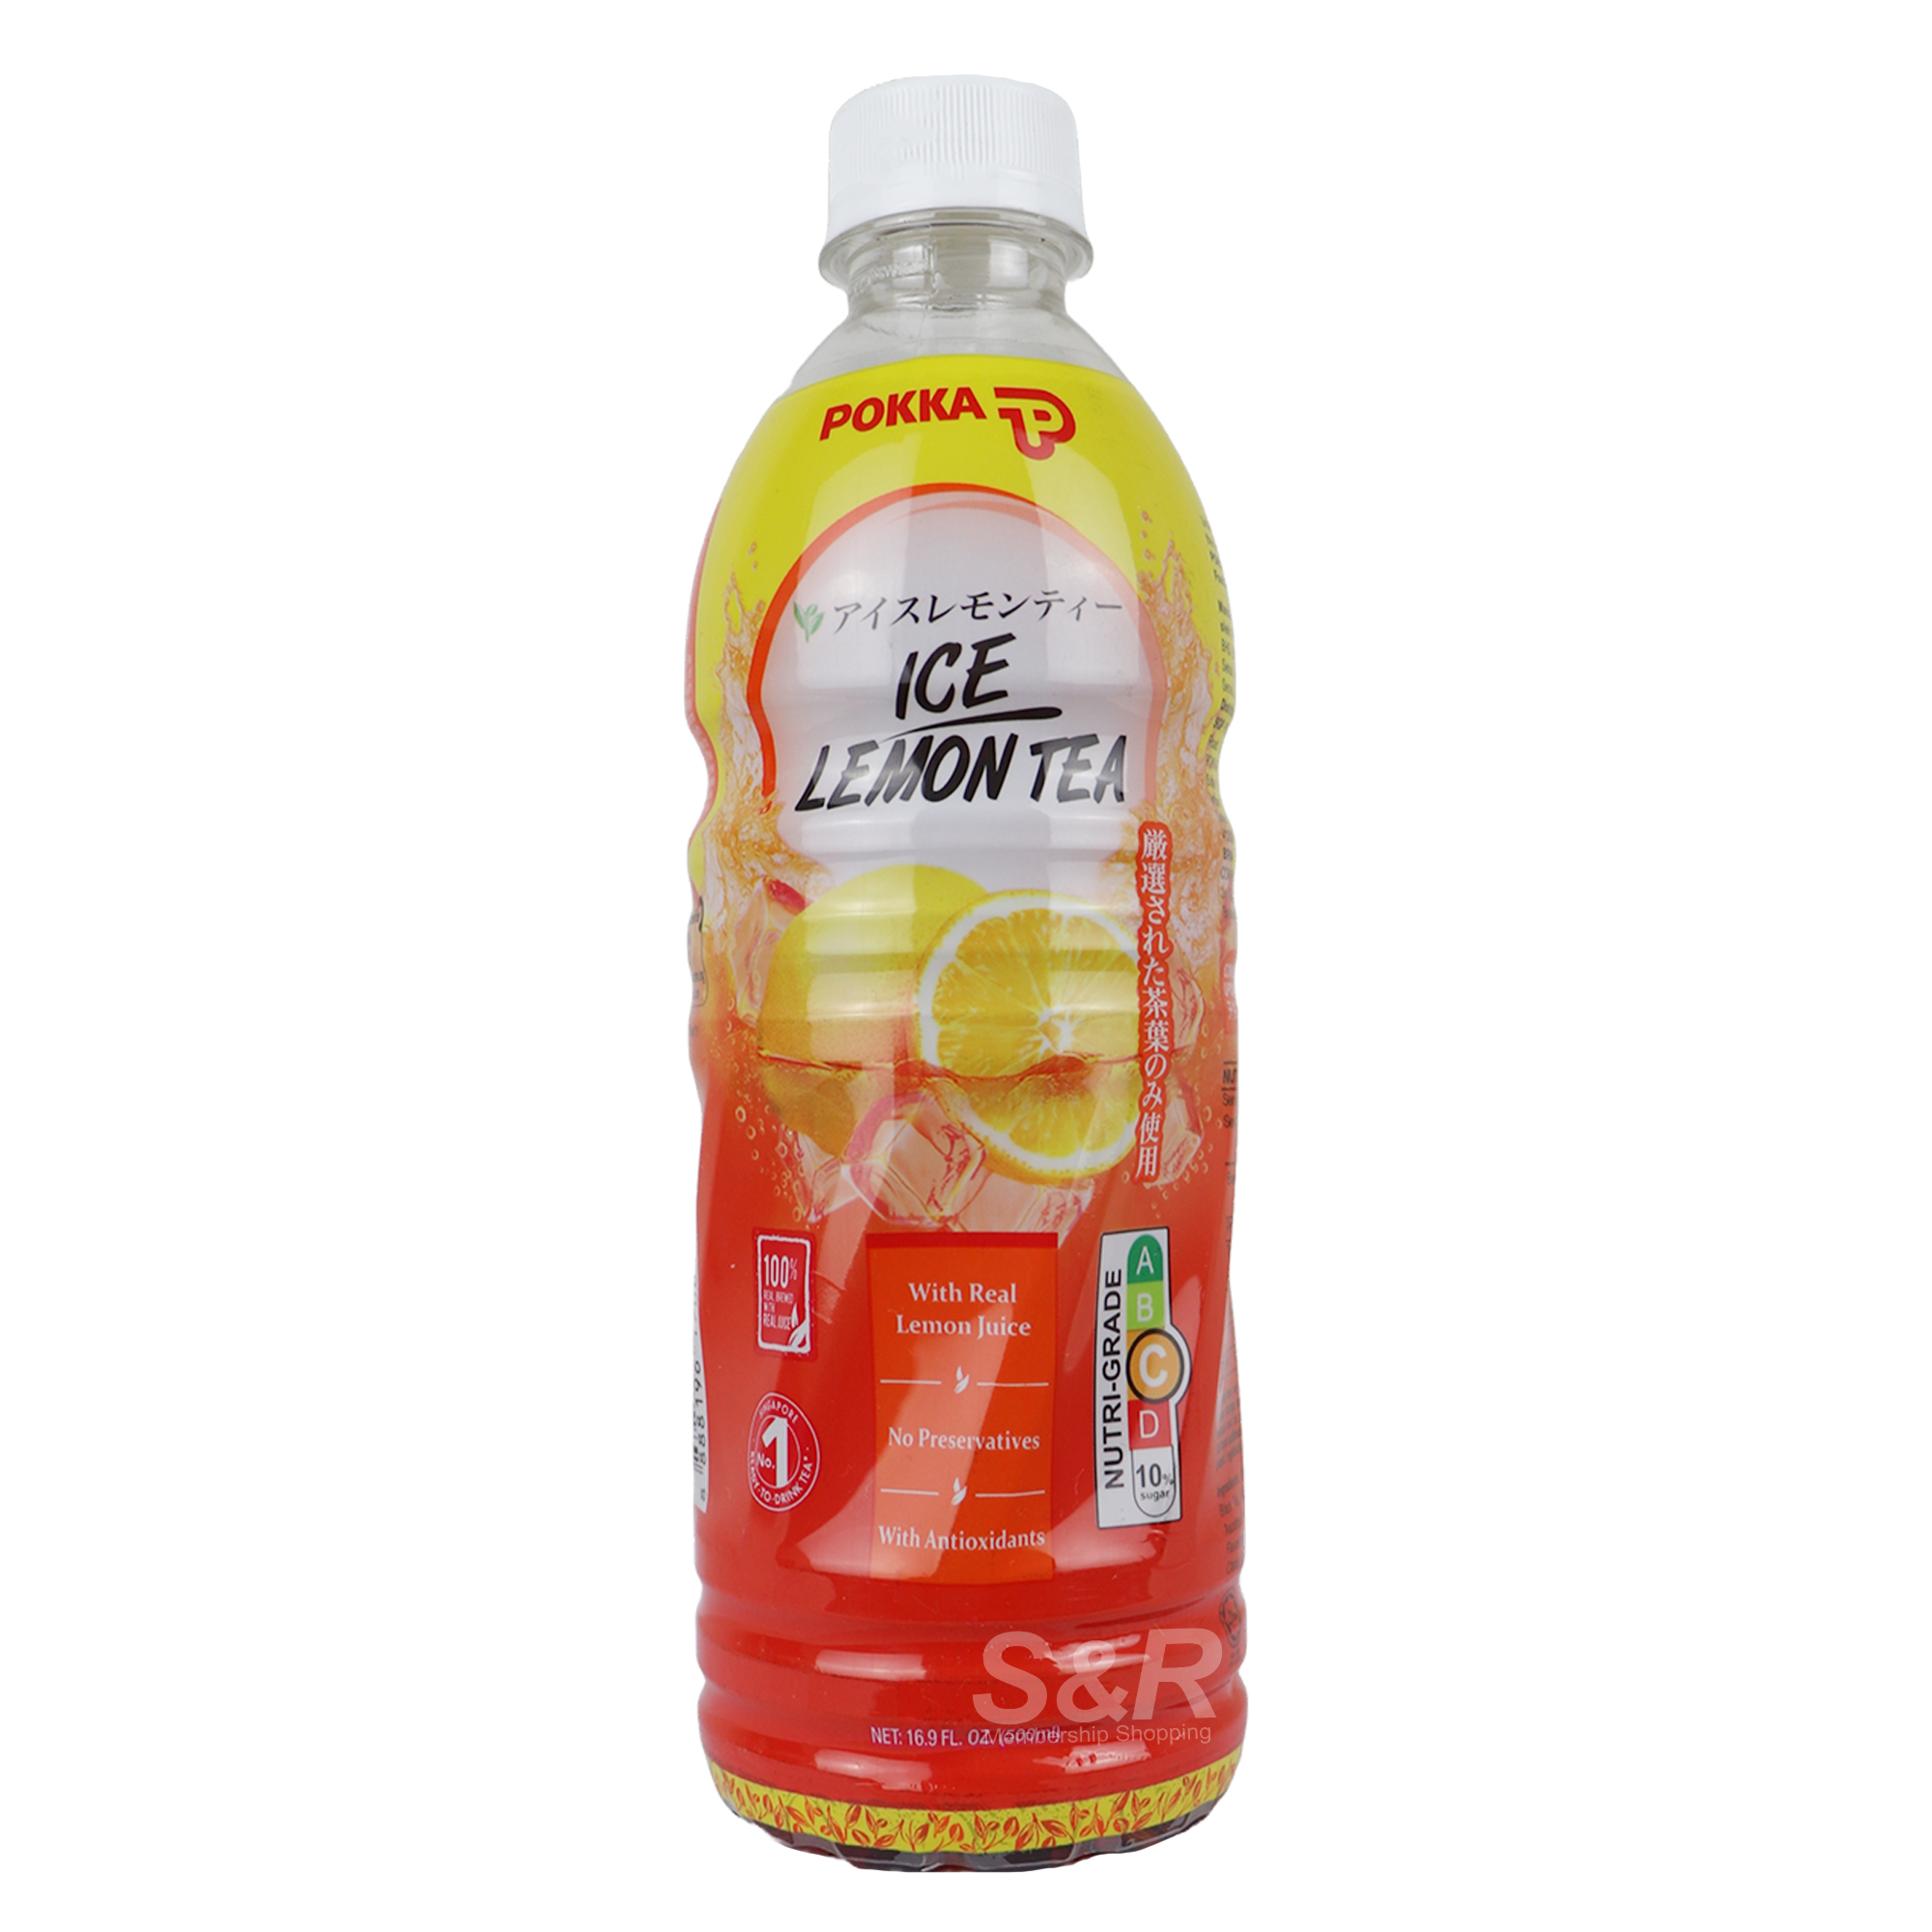 Pokka Ice Lemon Tea 500mL